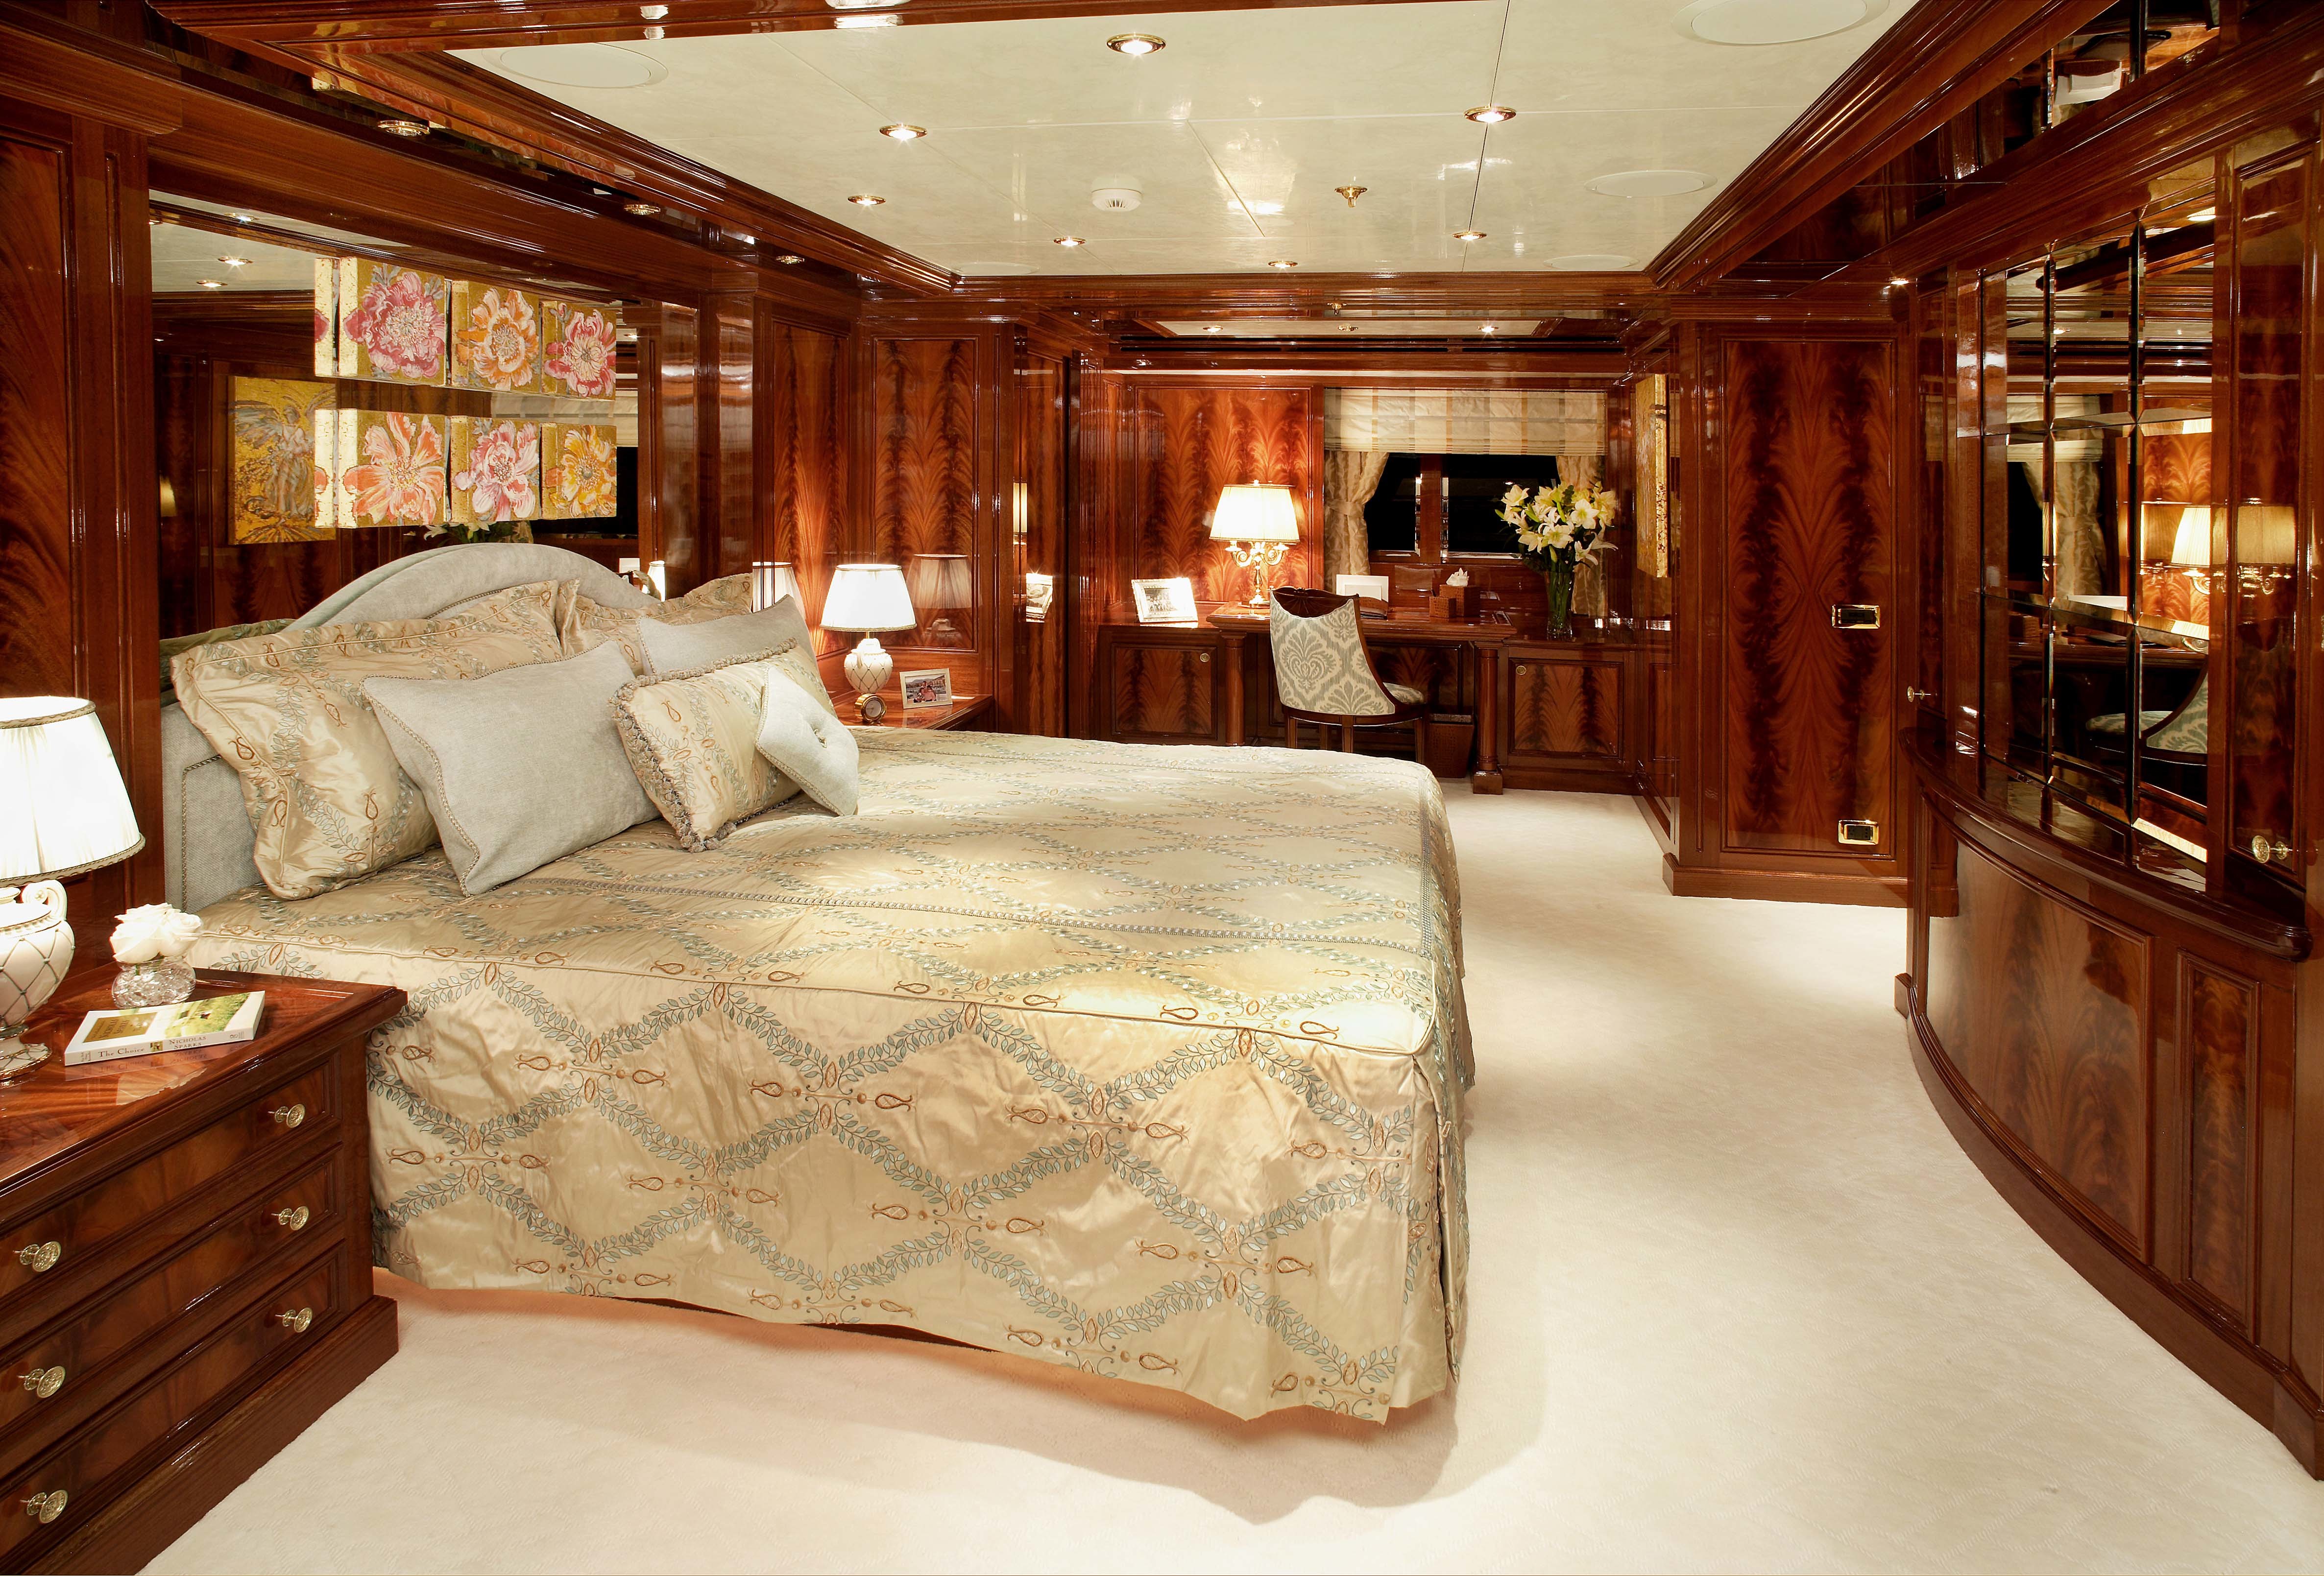 Luxury перевод на русский. Роскошные комнаты. Роскошный интерьер. Спальня в яхтенном стиле. Огромная спальня.